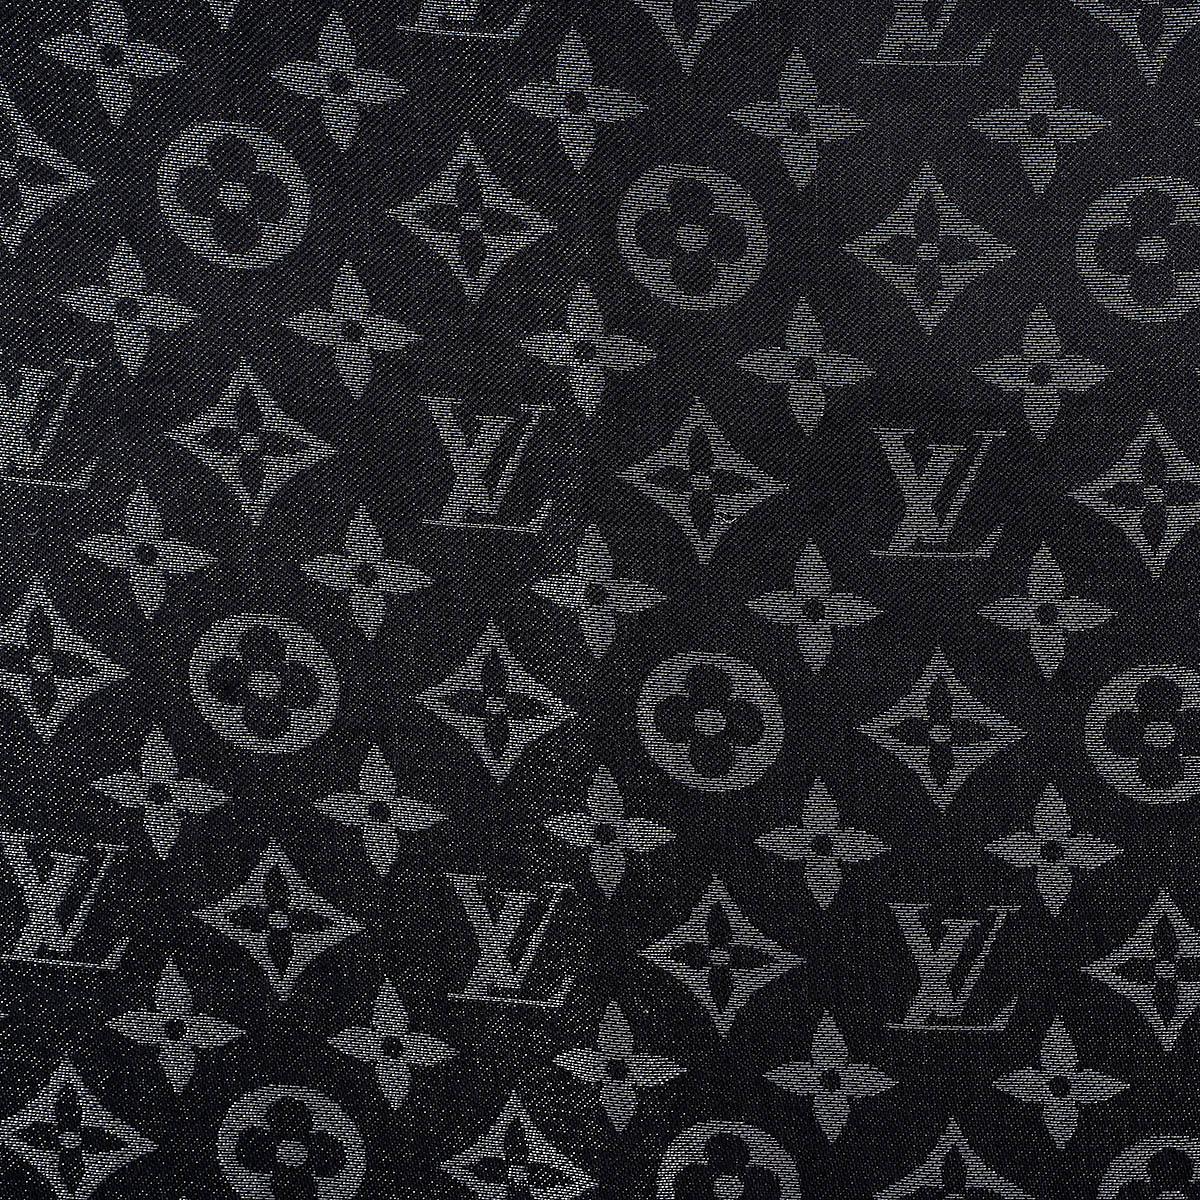 100% autentico scialle Monogram Shine di Louis Vuitton in seta argento metallizzato (50%), metallo (30%) e lana (20%). È stato indossato una sola volta ed è in condizioni praticamente nuove. 

Misure
Larghezza	142cm (55.4in)
Lunghezza	142cm